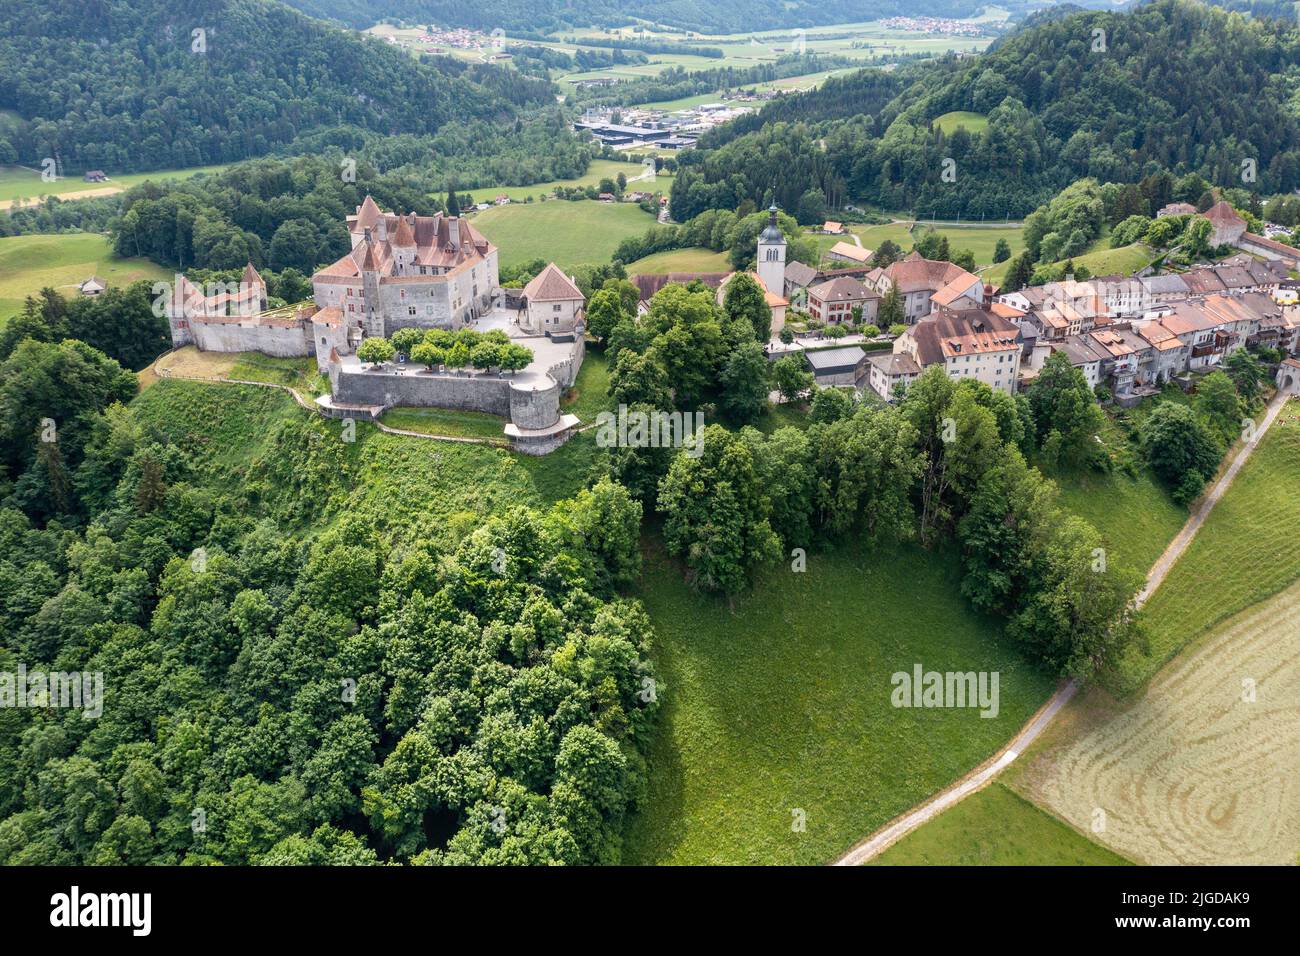 Gruyères Castle, Château de Gruyères, Gruyères, Switzerland Stock Photo